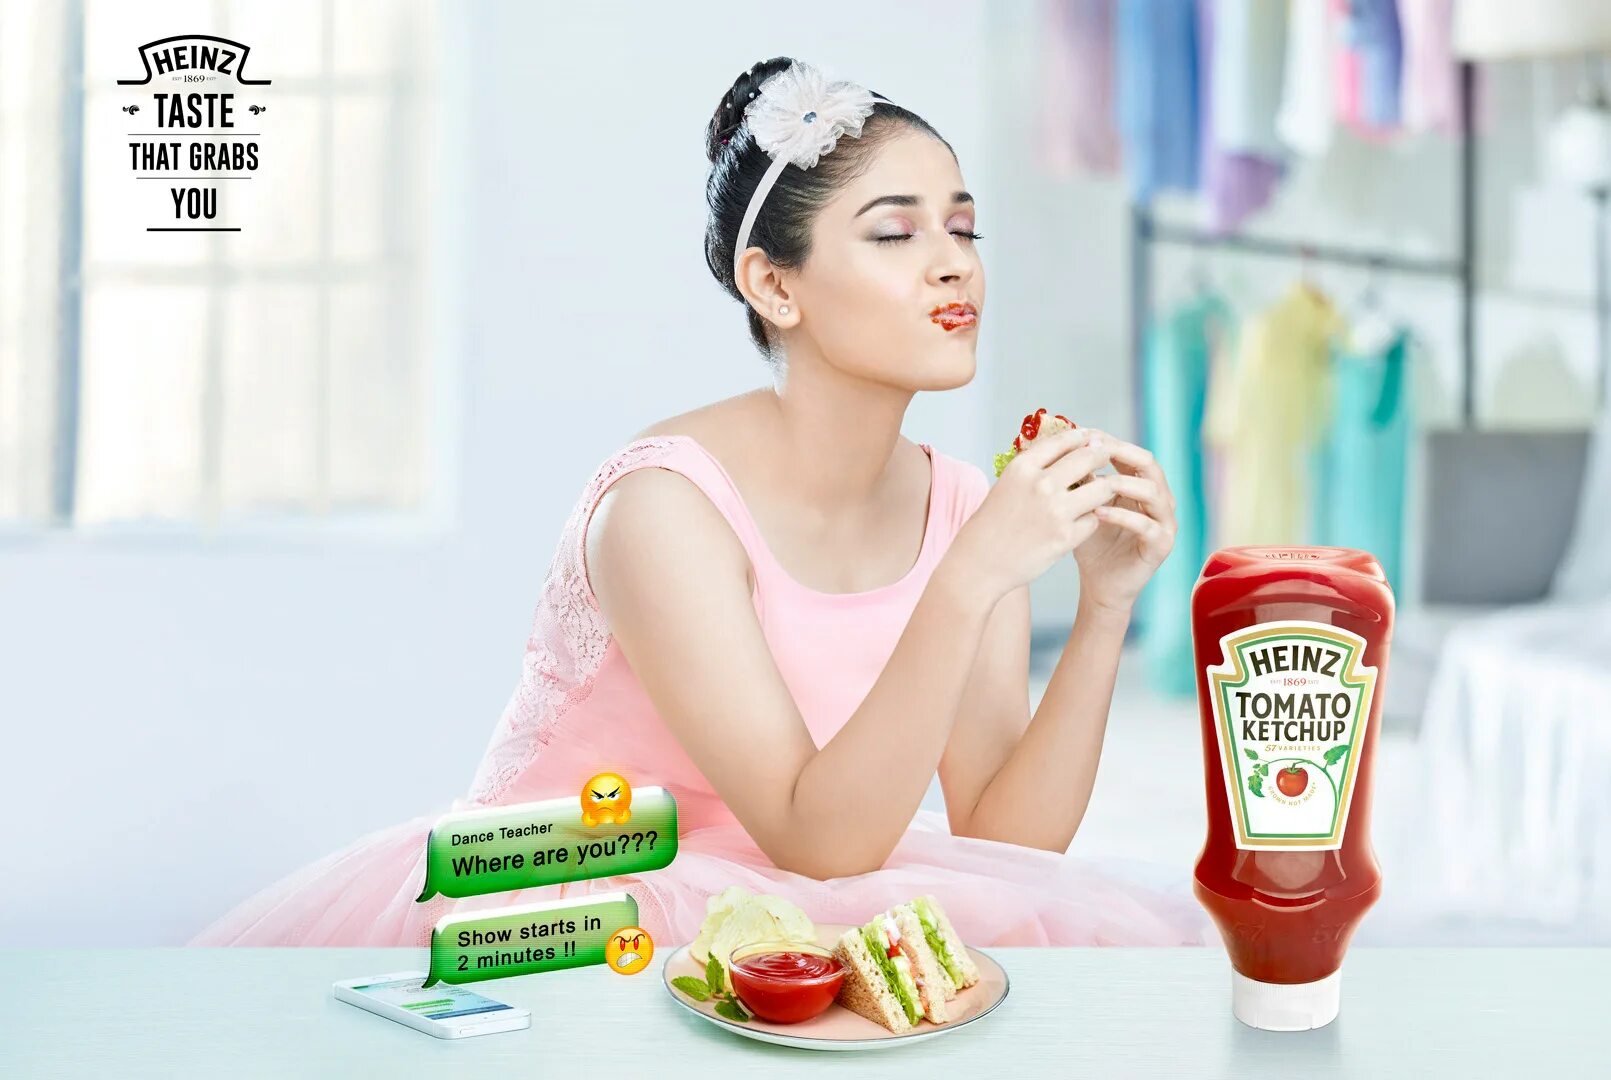 Реклама Heinz. Реклама кетчупа Heinz. Heinz реклама 2021. Популярная реклама Хайнц. Реклама итальянское качество